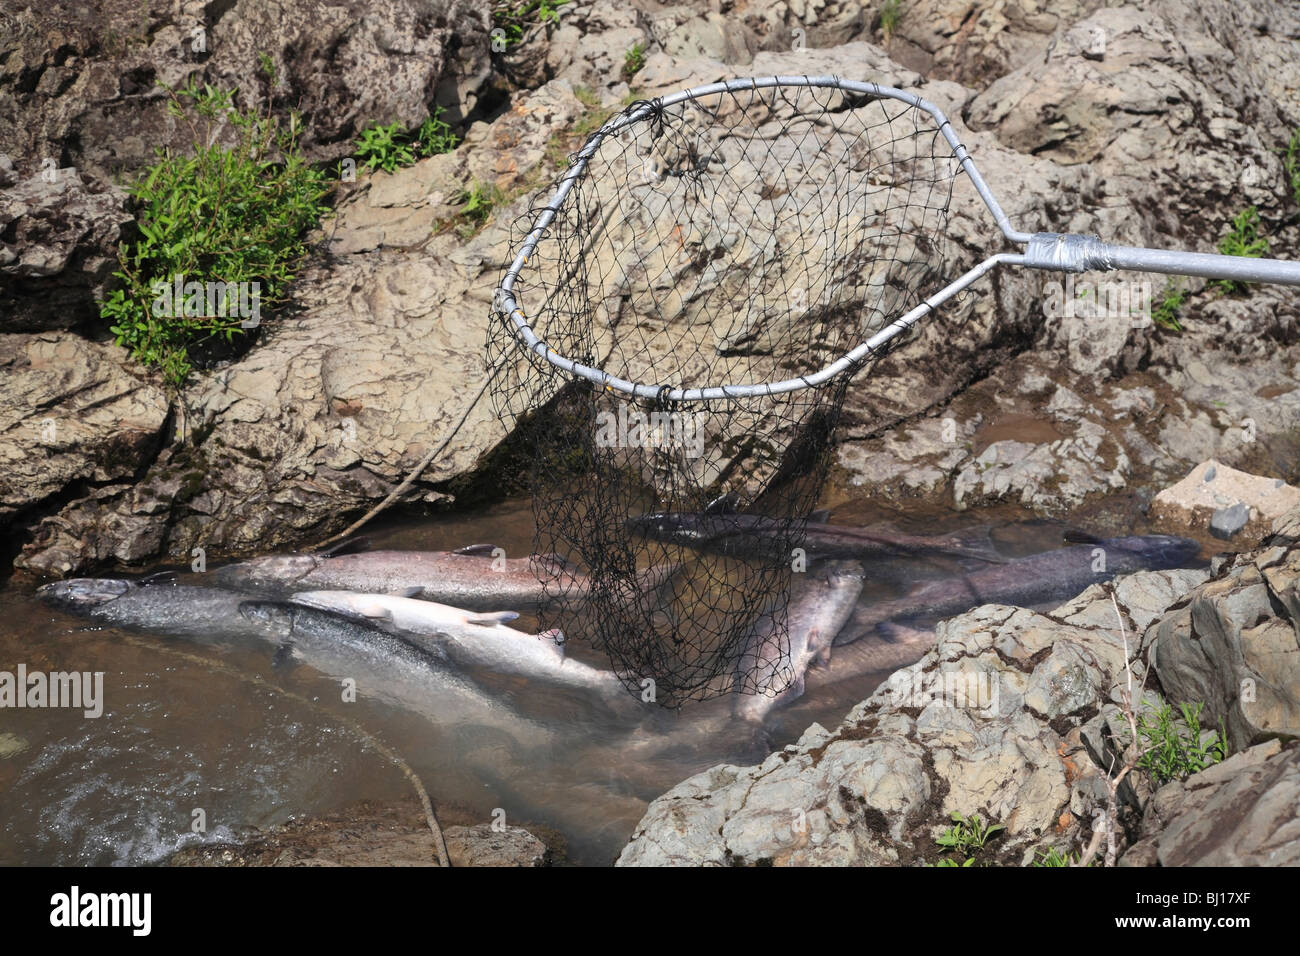 L'épuisette des Premières Nations pris le saumon quinnat, chutes de Moricetown, Bulkley River, Colombie-Britannique Banque D'Images